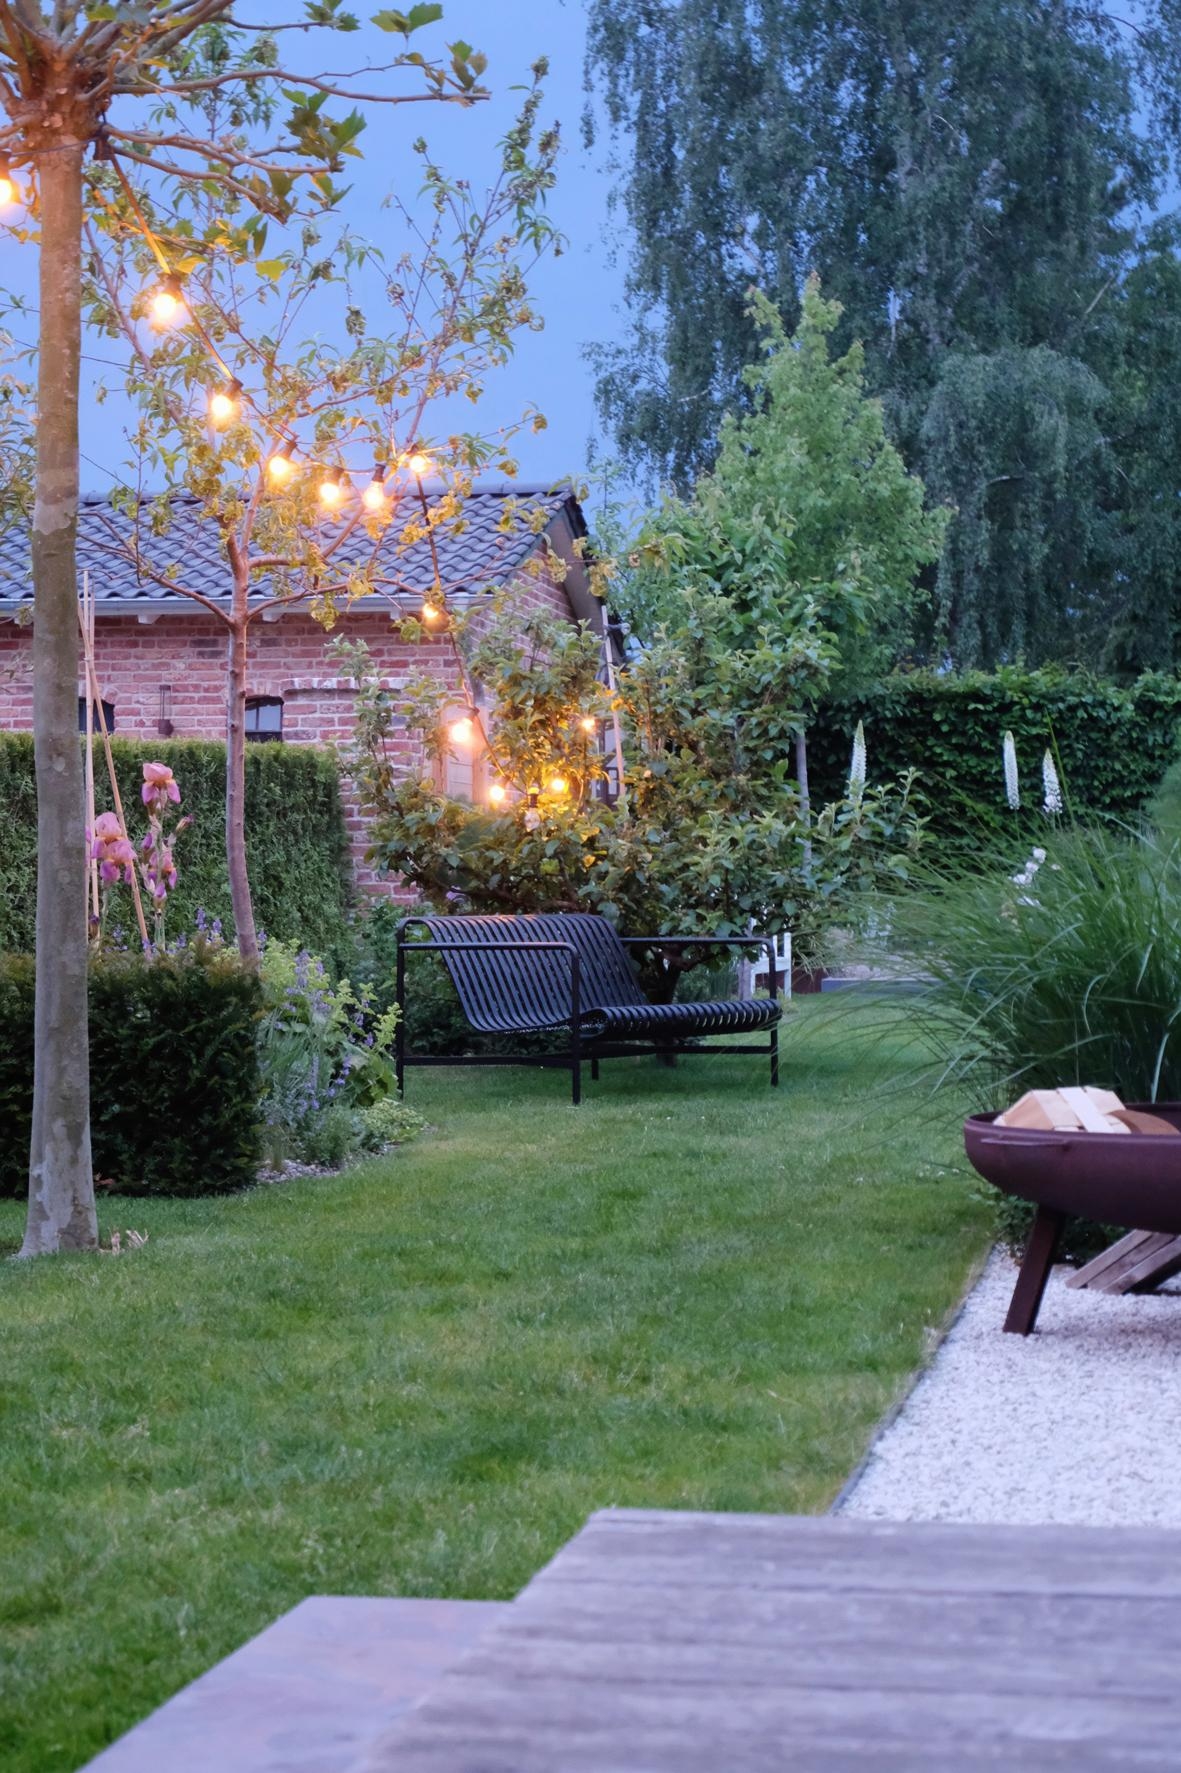 eins hätte ich noch; Abendstimmung im #garten #gartenbank #blumen #terrasse #lichterkette